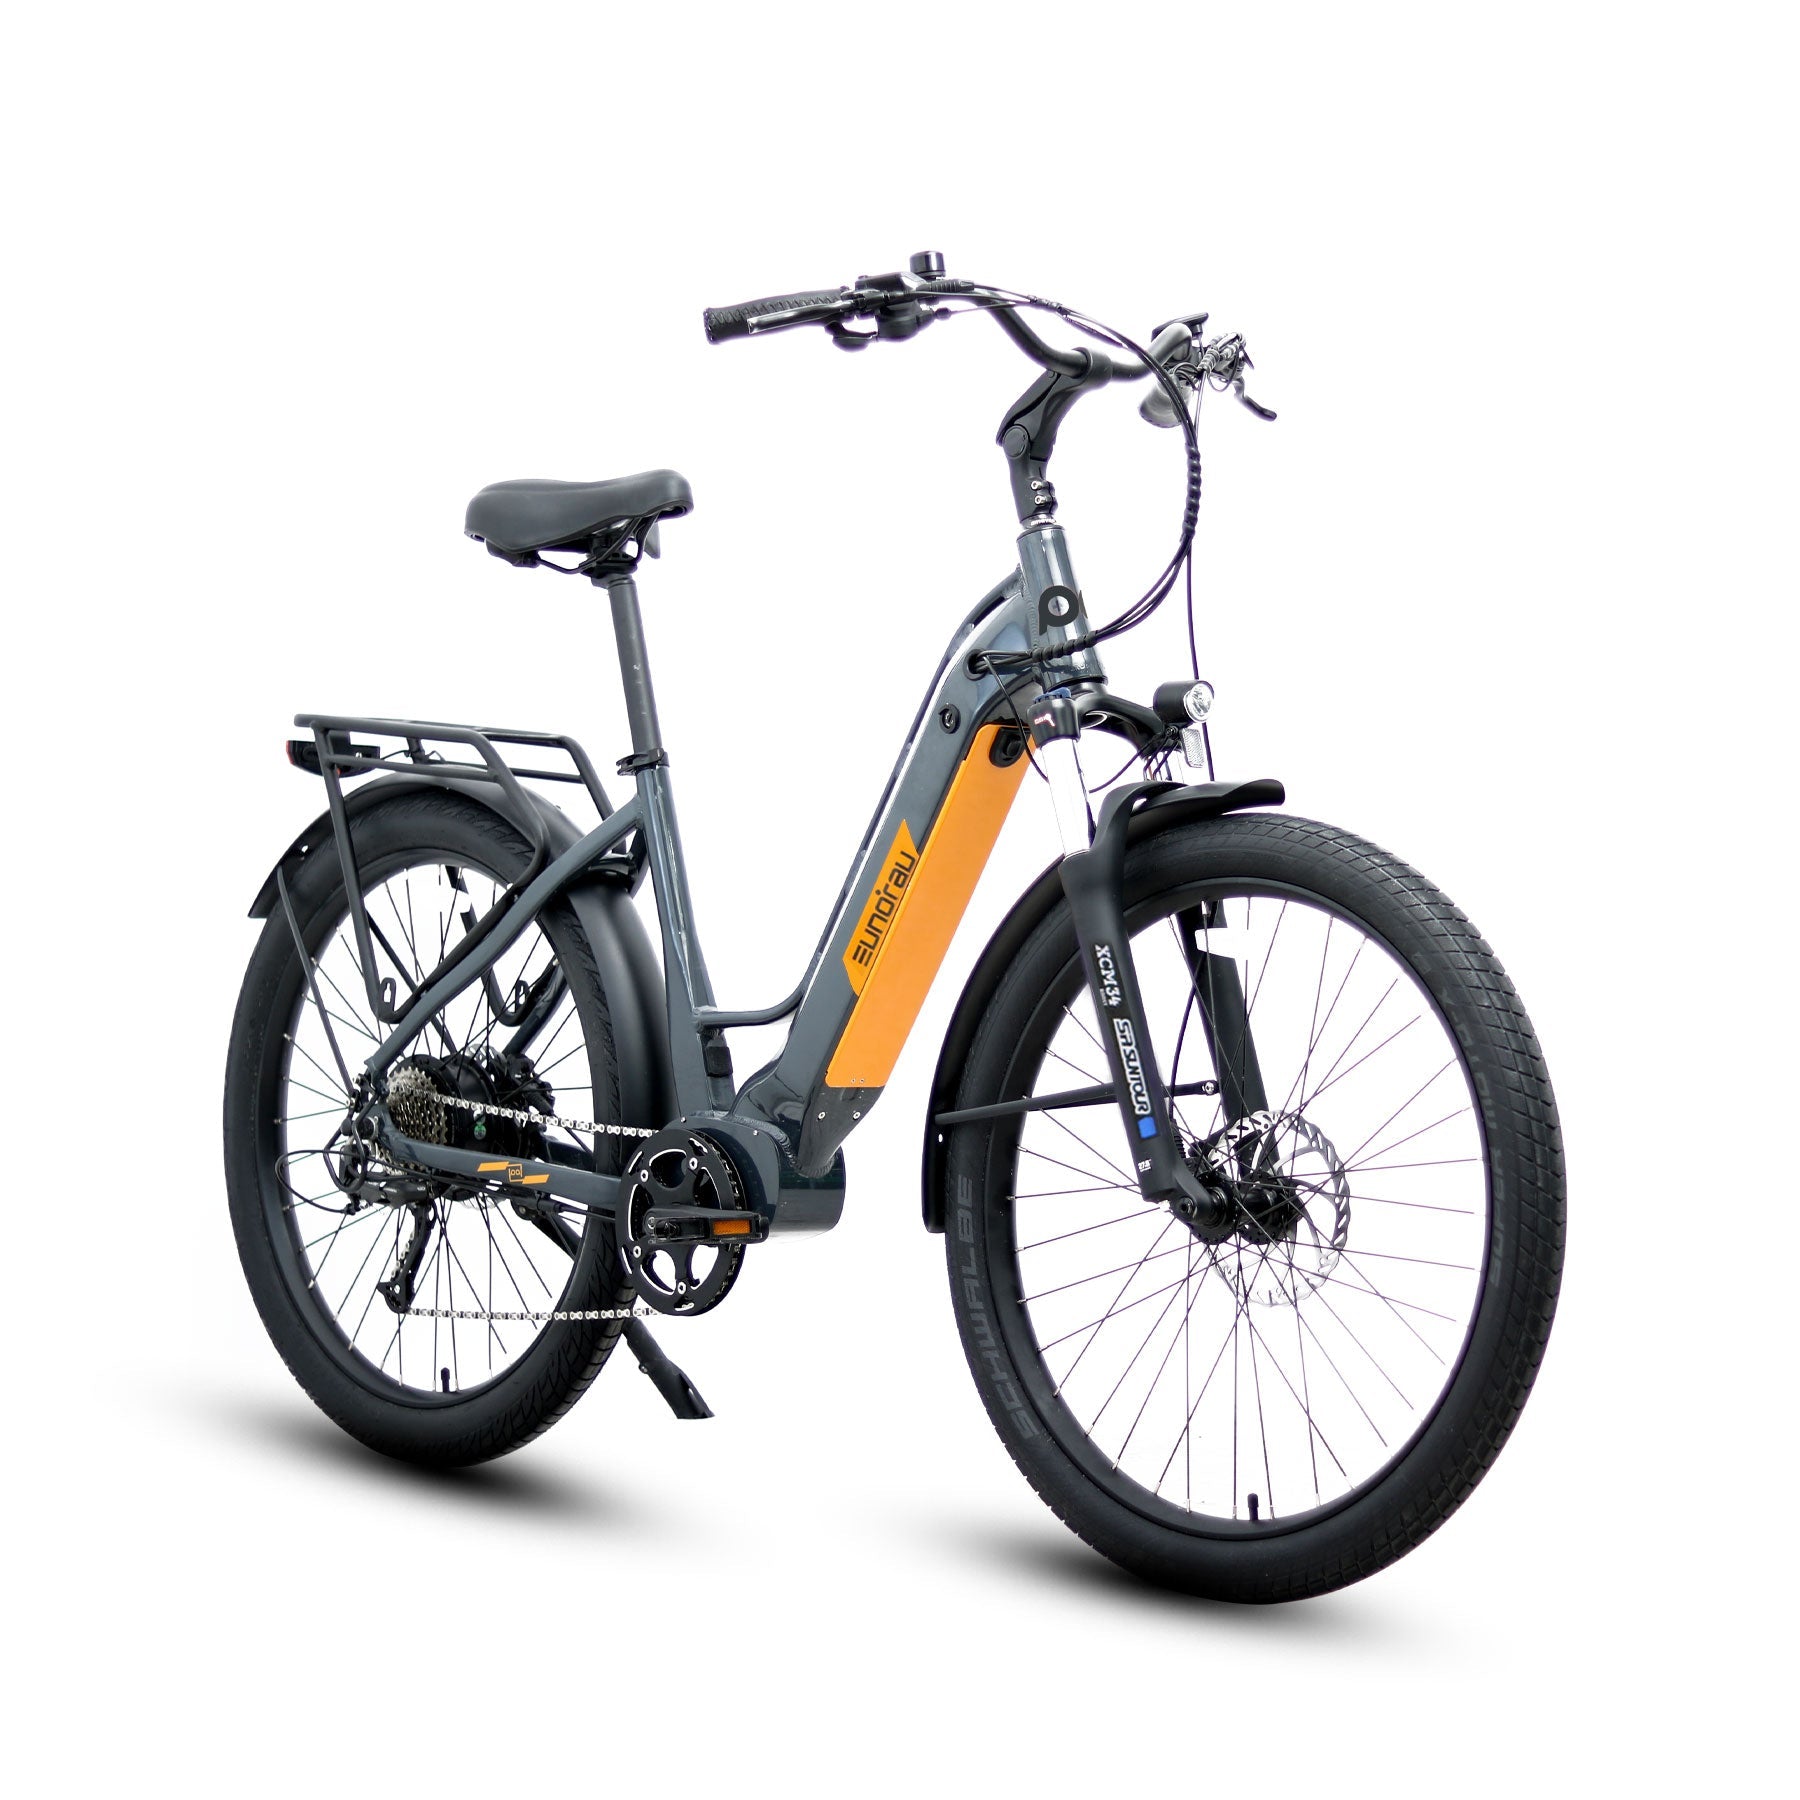 EUNORAU Meta 275 Step Thru Electric Bike 48V250W High Torque Motor E-Bike Bicycle